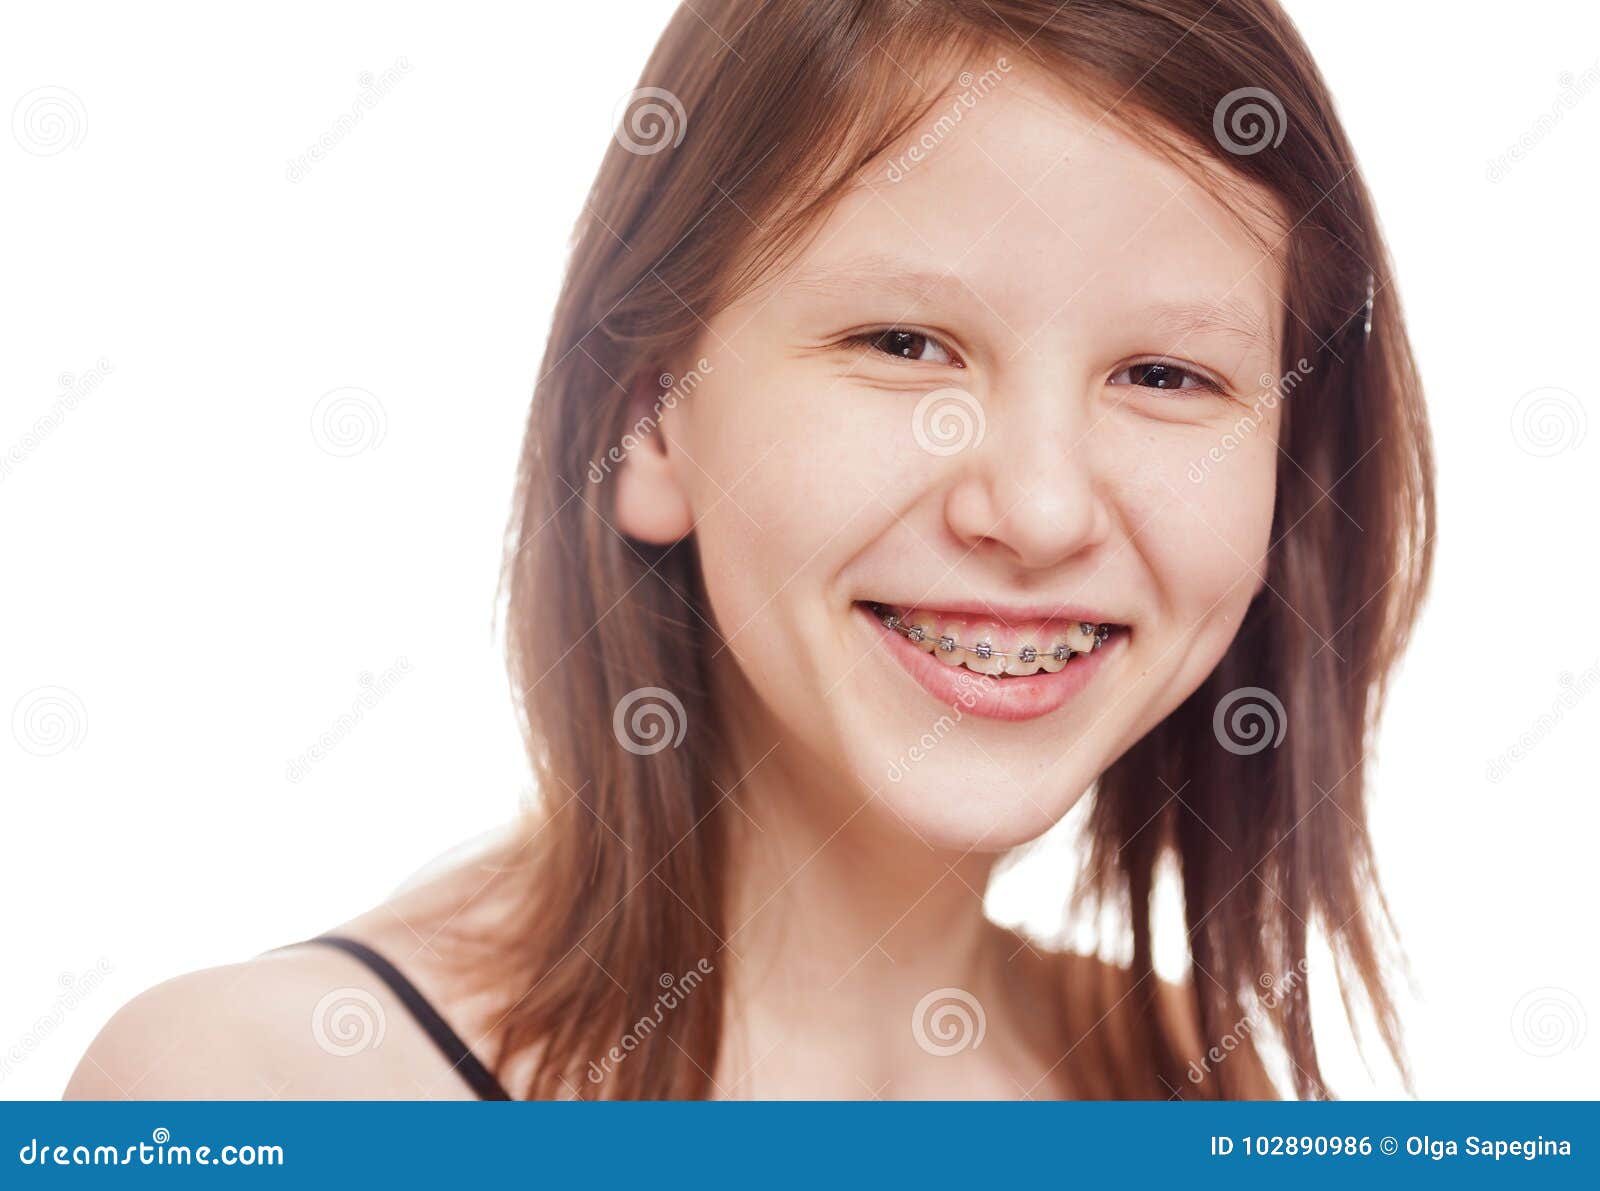 Teenage girl isolated stock photo. Image of attractive - 102890986